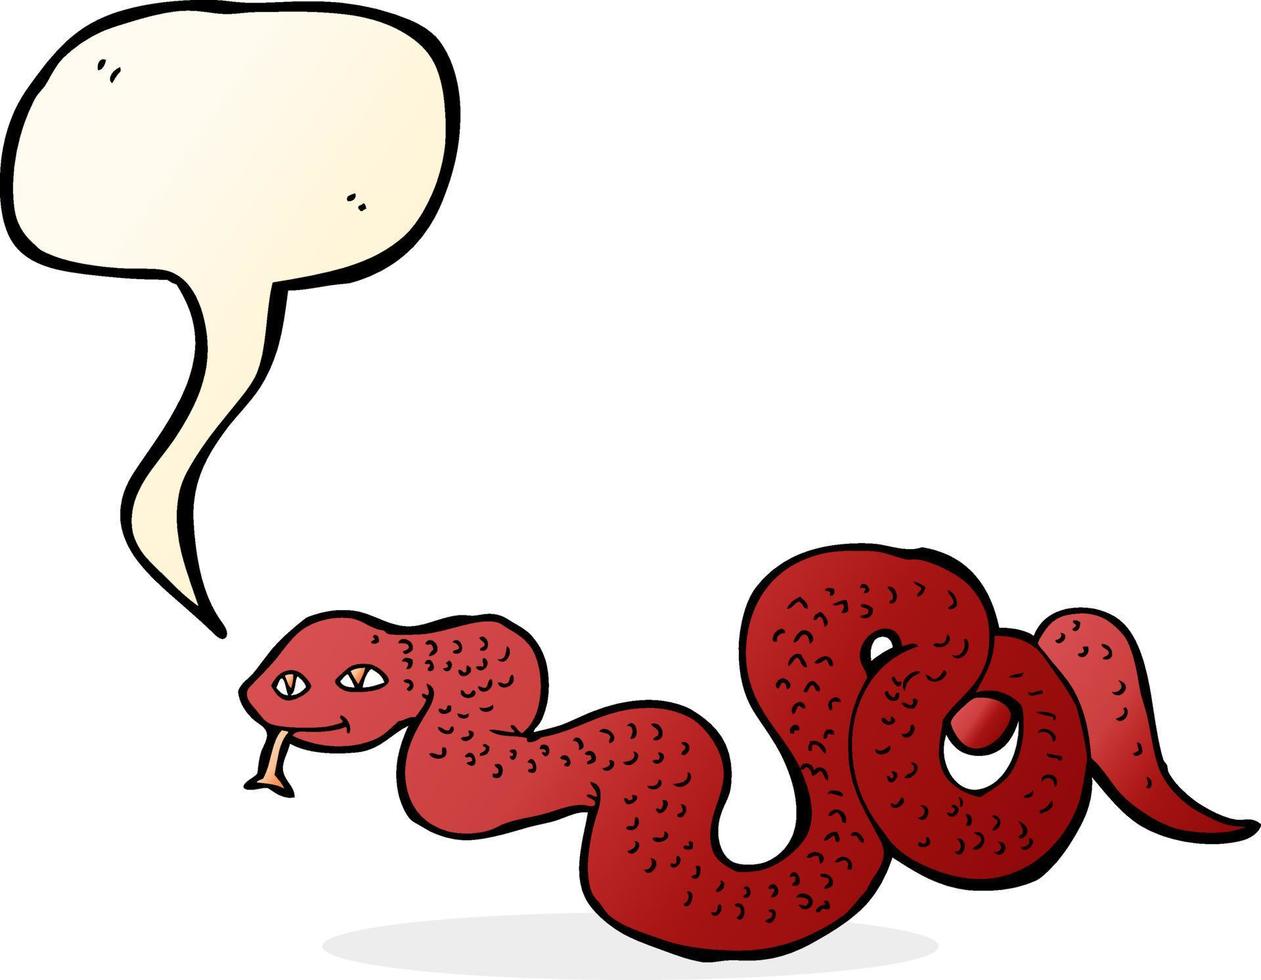 serpiente de dibujos animados con burbujas de discurso vector